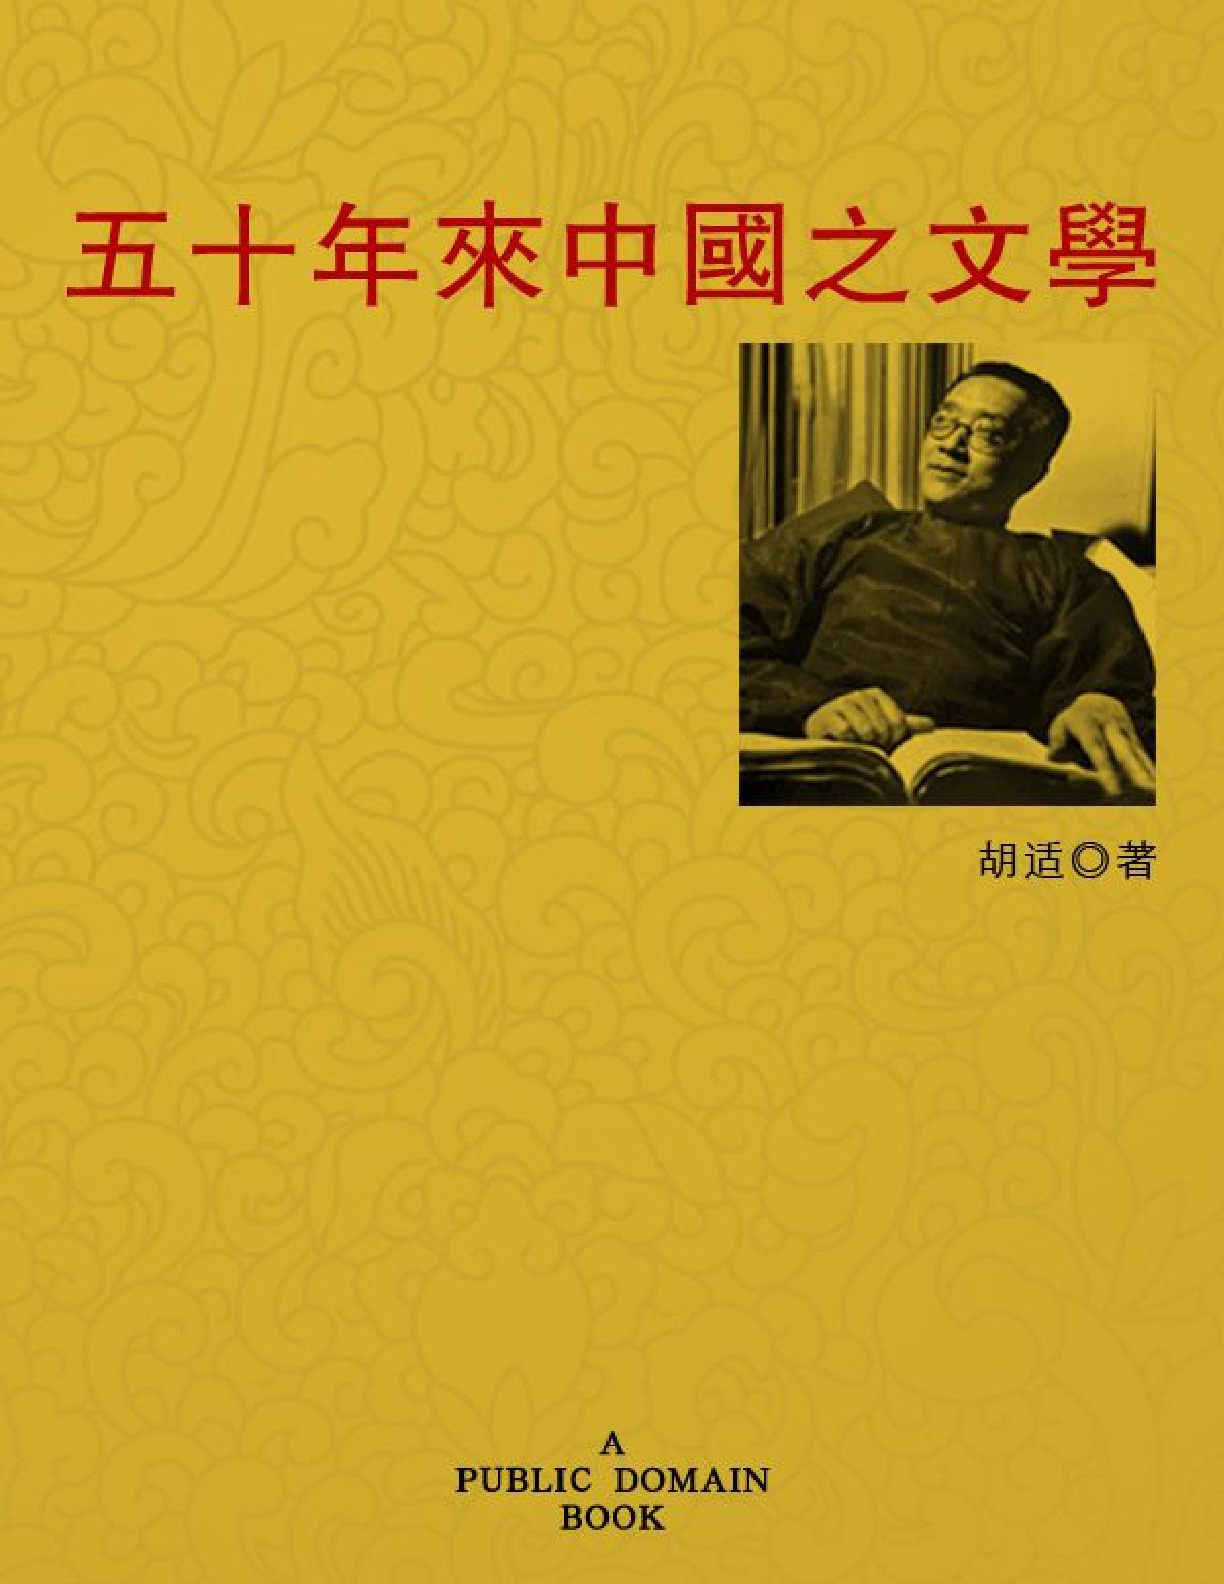 五十年来中国之文学 – 胡适